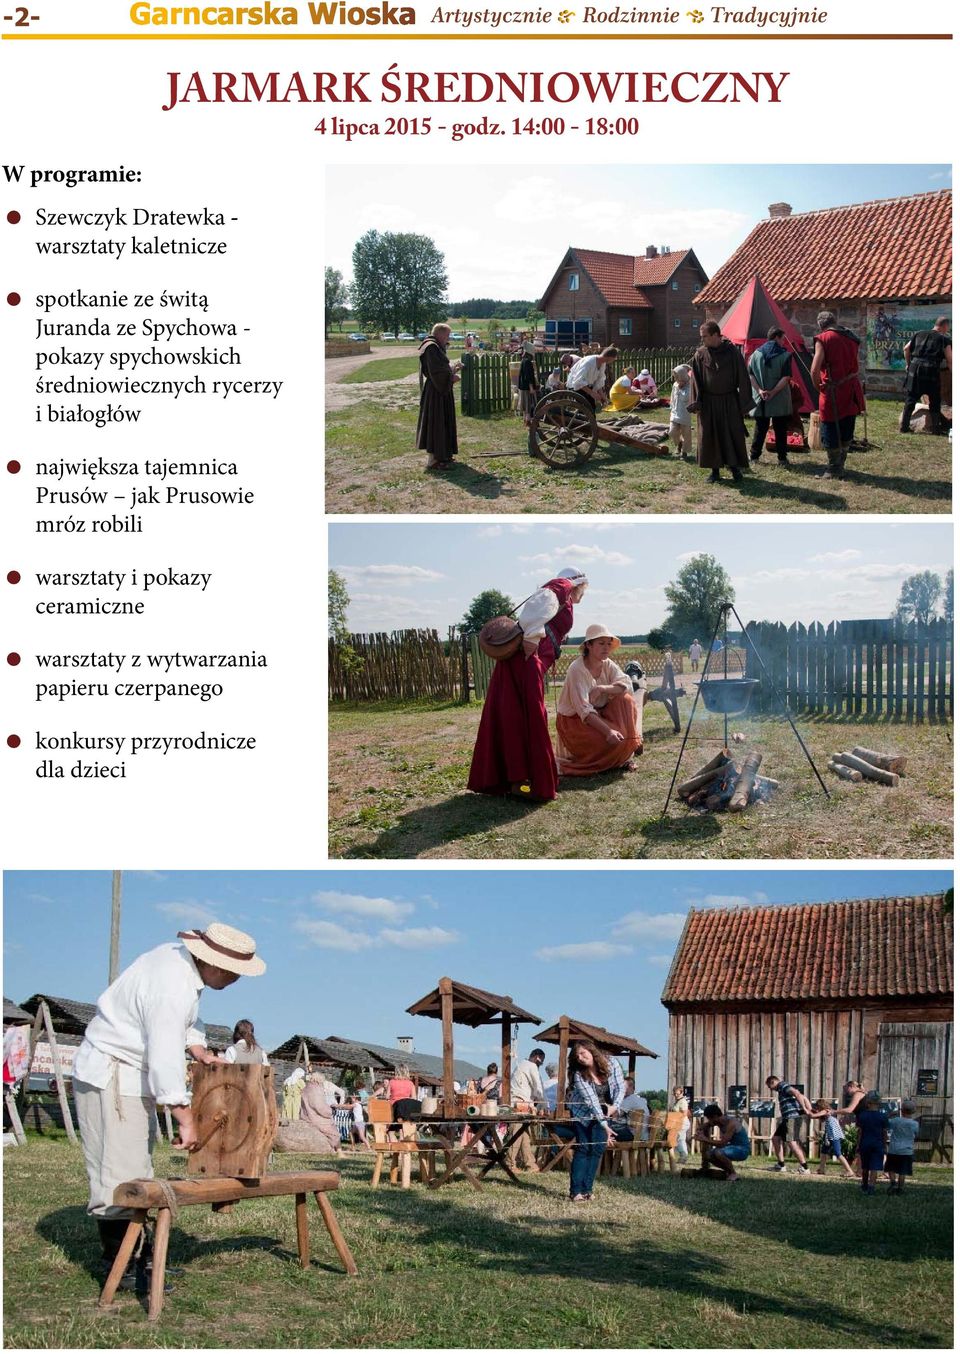 Juranda ze Spychowa - pokazy spychowskich średniowiecznych rycerzy i białogłów największa